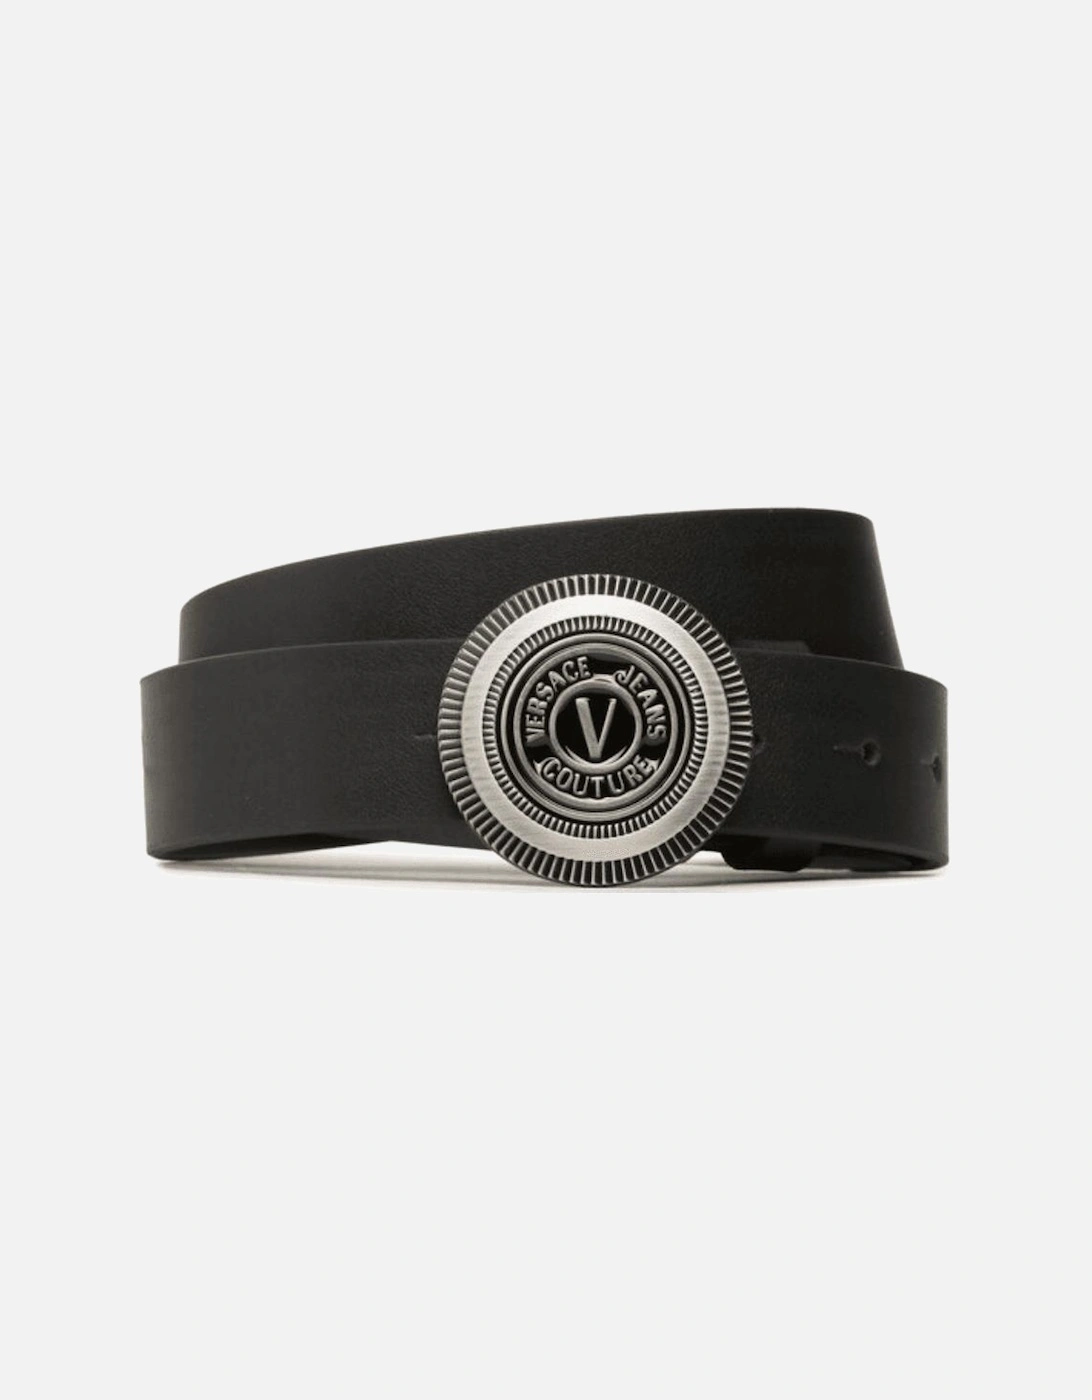 Silver V-Emblem Buckle Black Leather Belt, 3 of 2